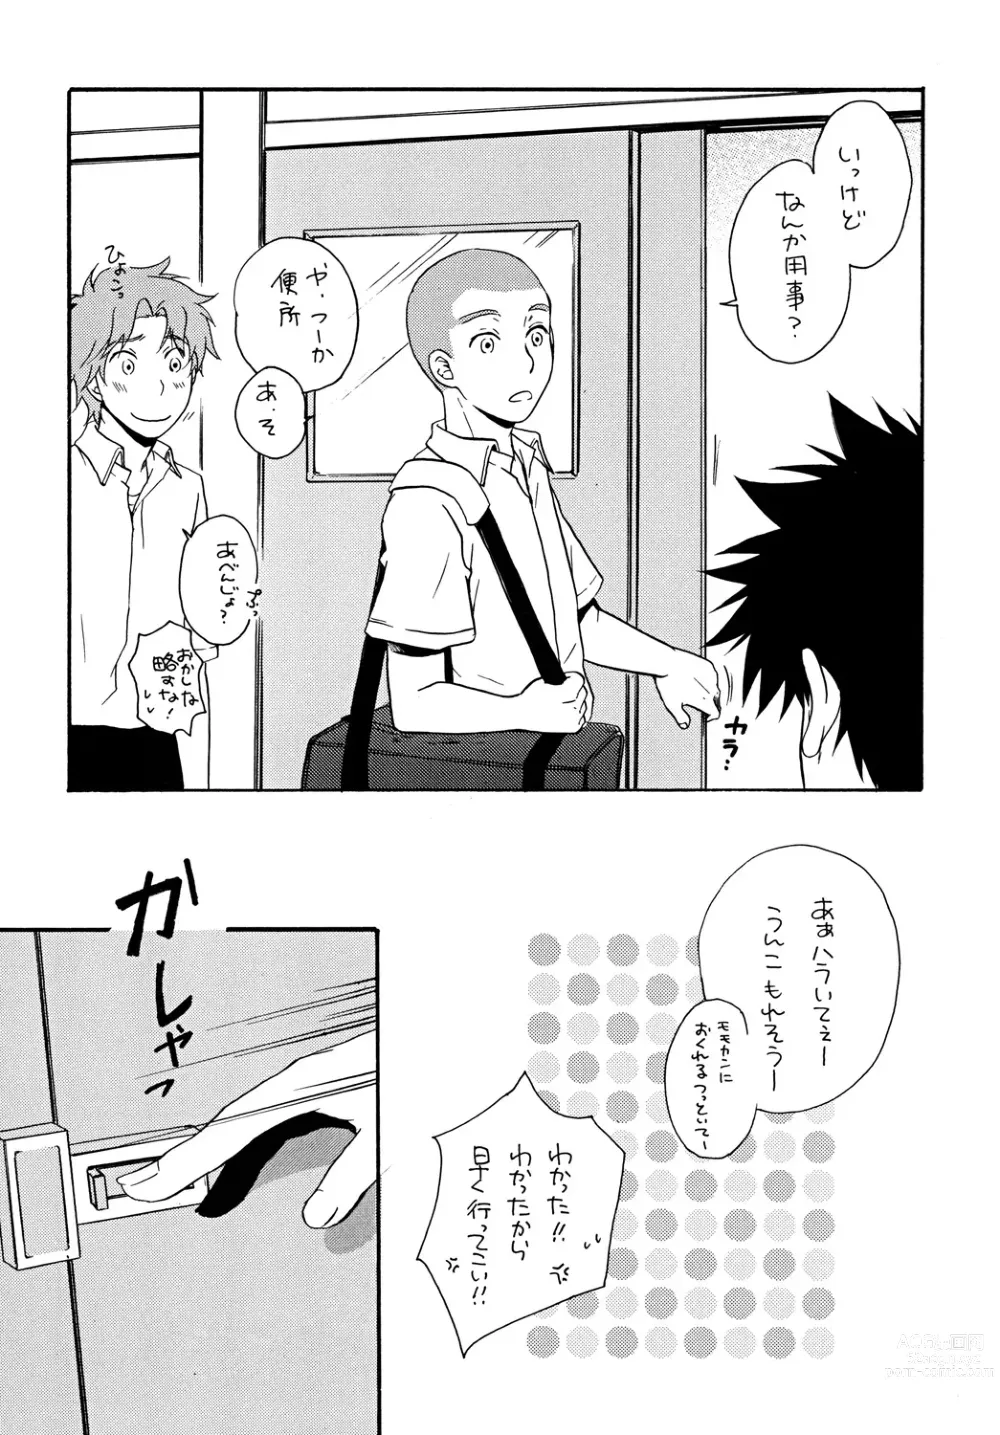 Page 5 of doujinshi Zutto Motto Soba ni